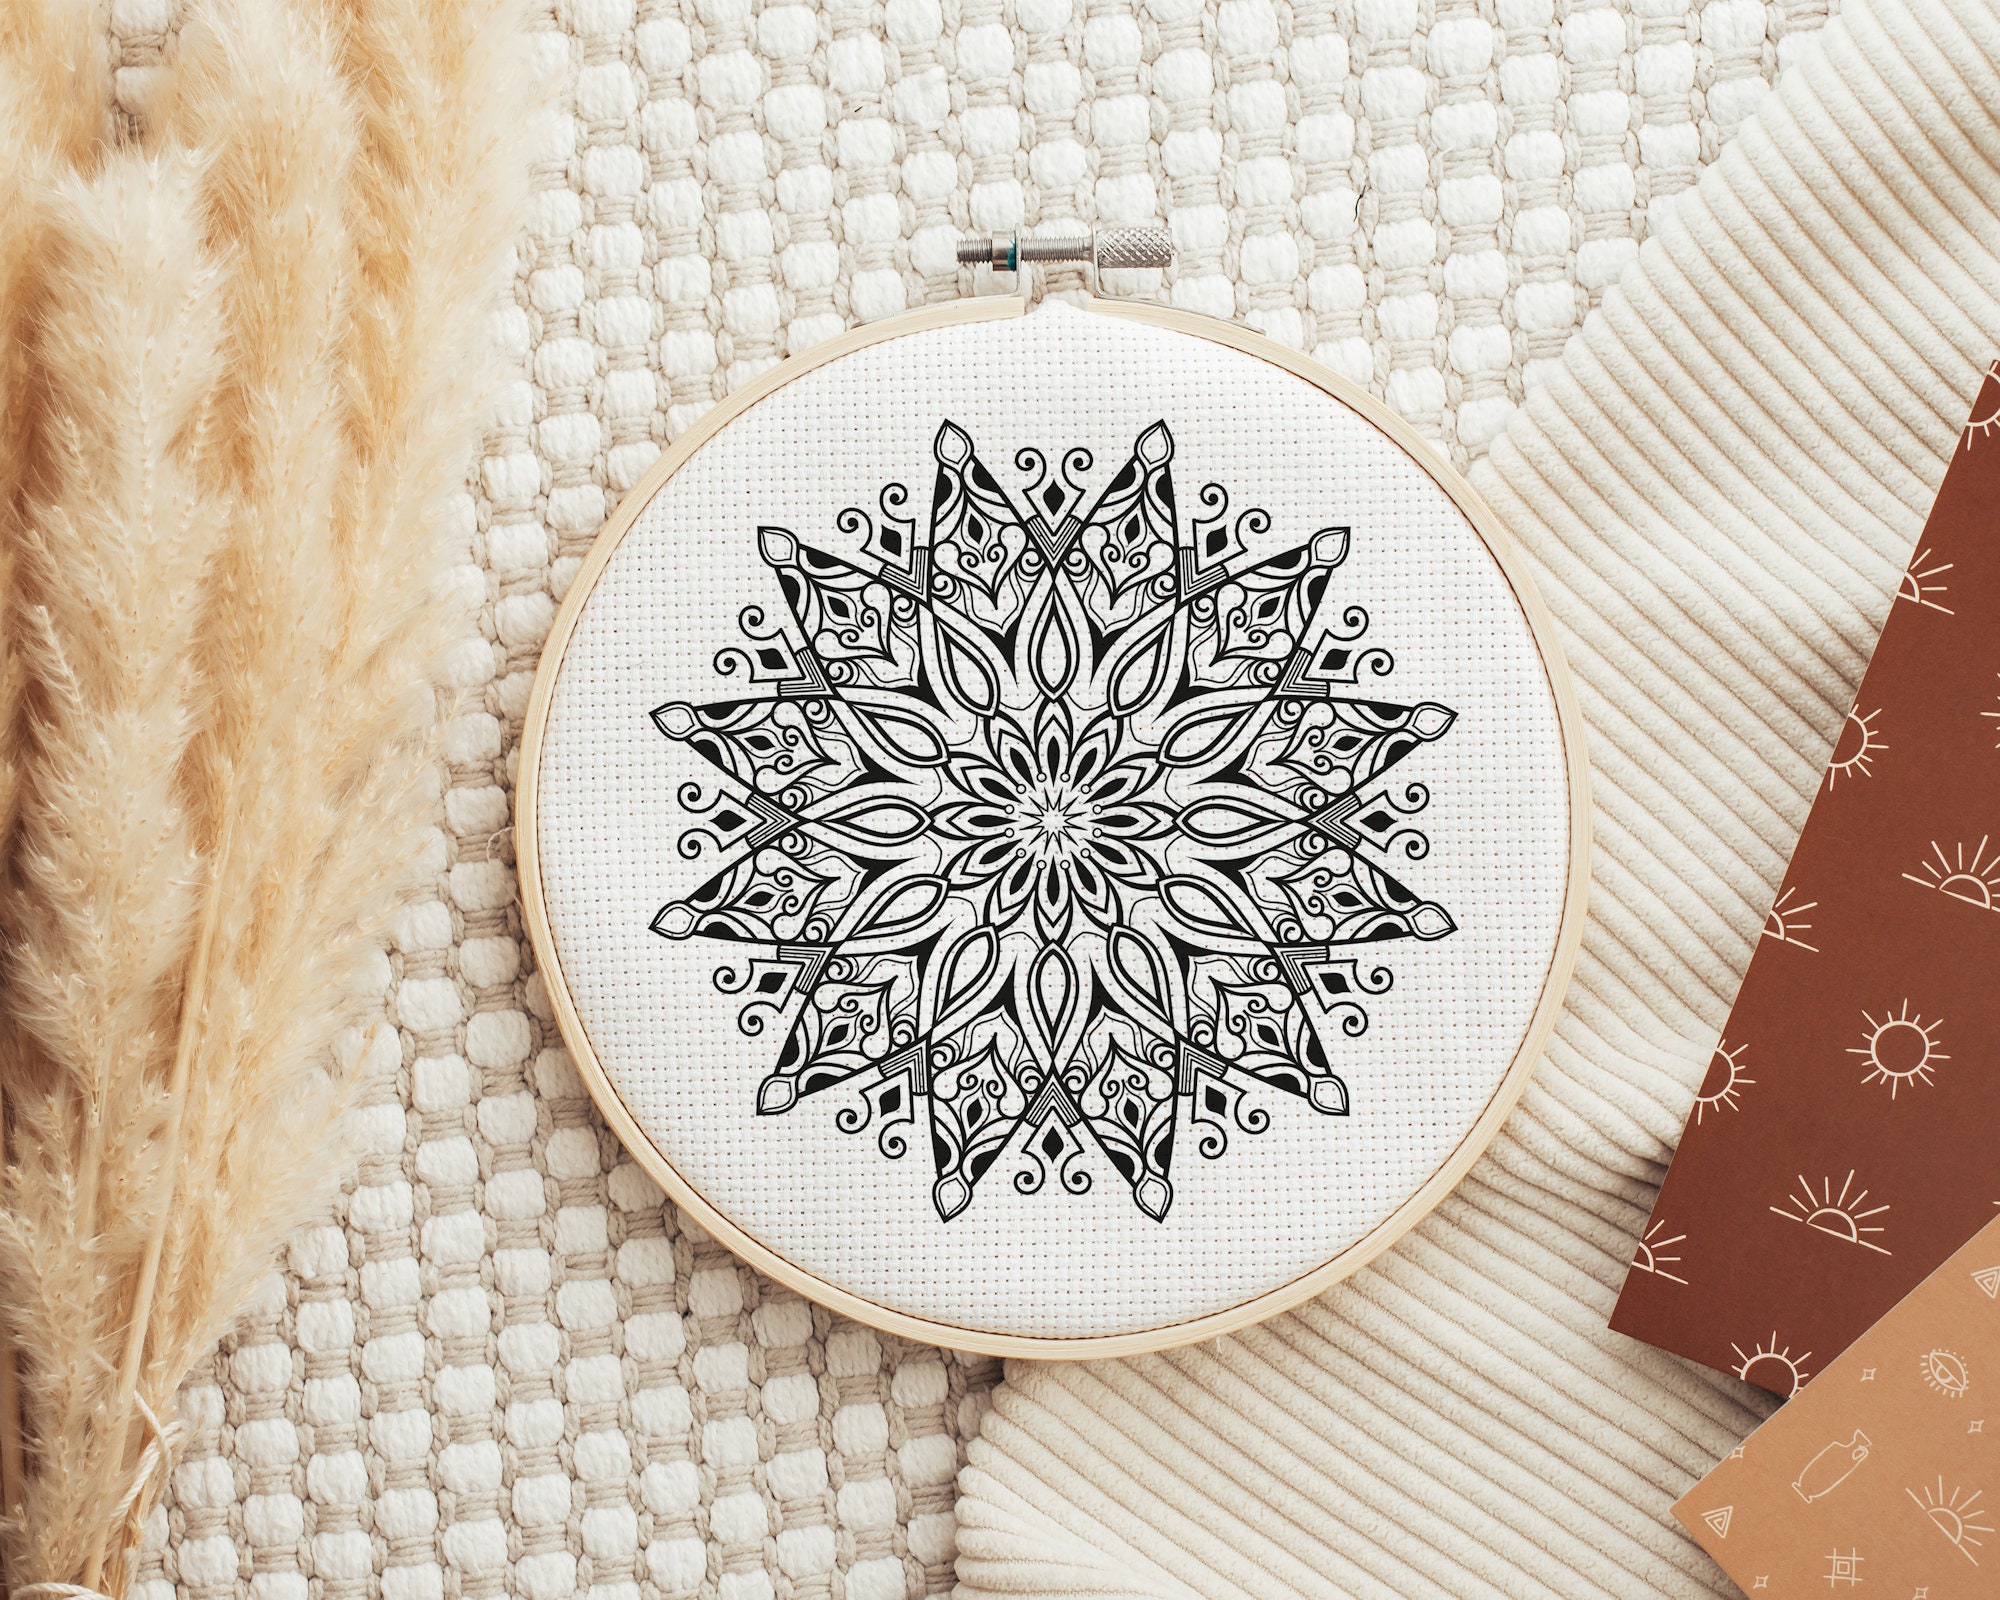 Manta Ray embroidery design, Mandala cross stitch pattern